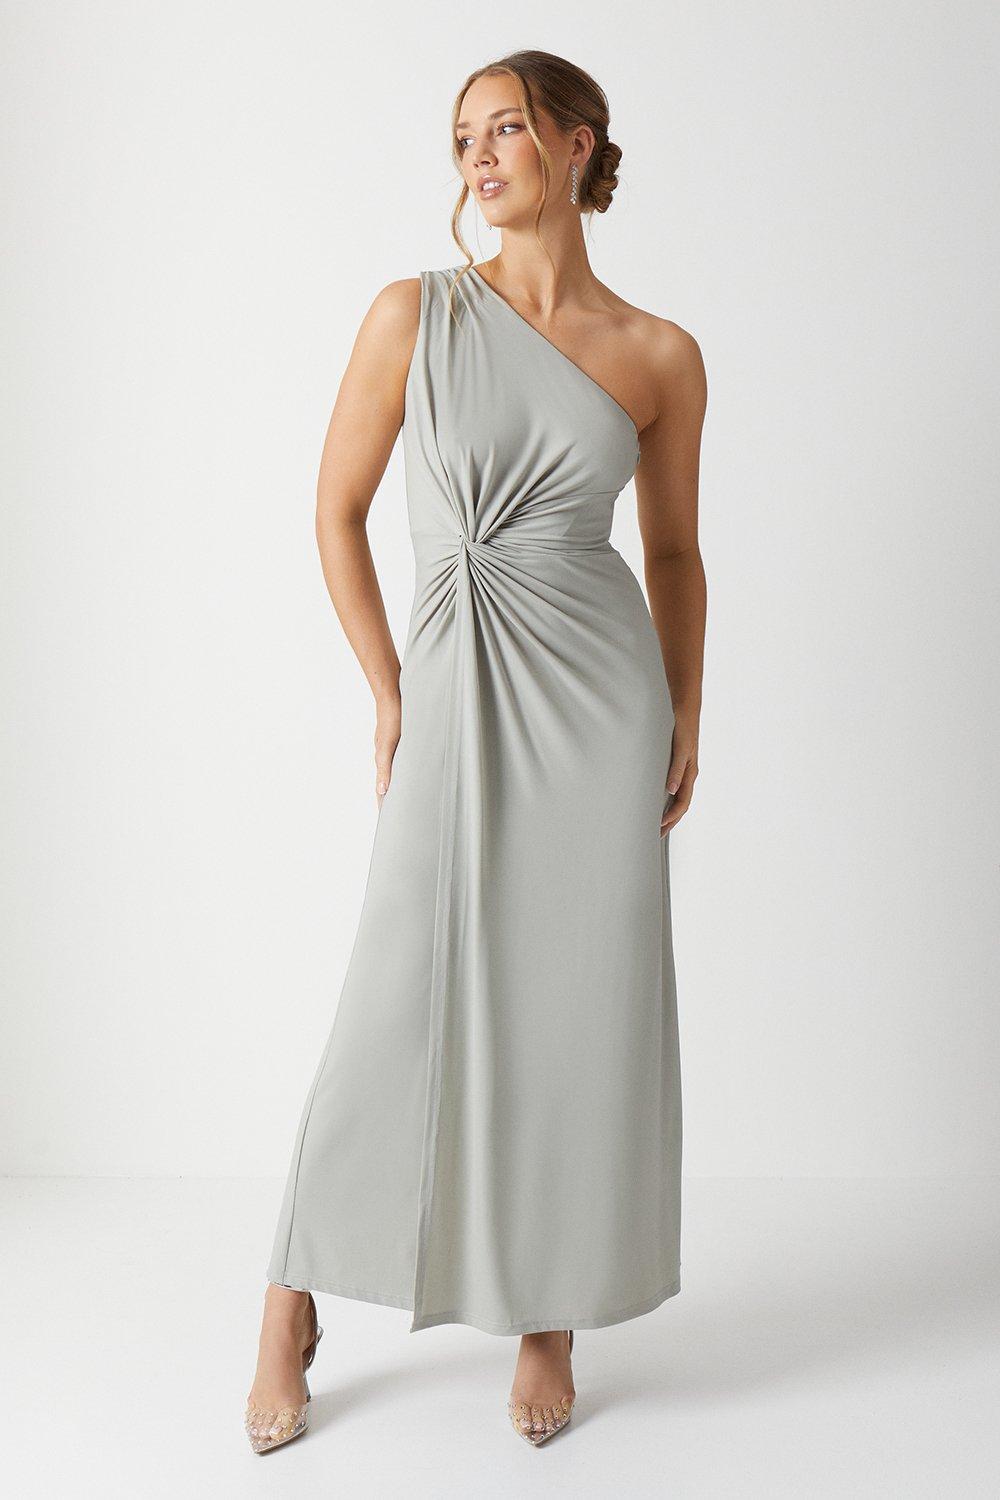 Twist Detail One Shoulder Jersey Bridesmaids Dress - Sage